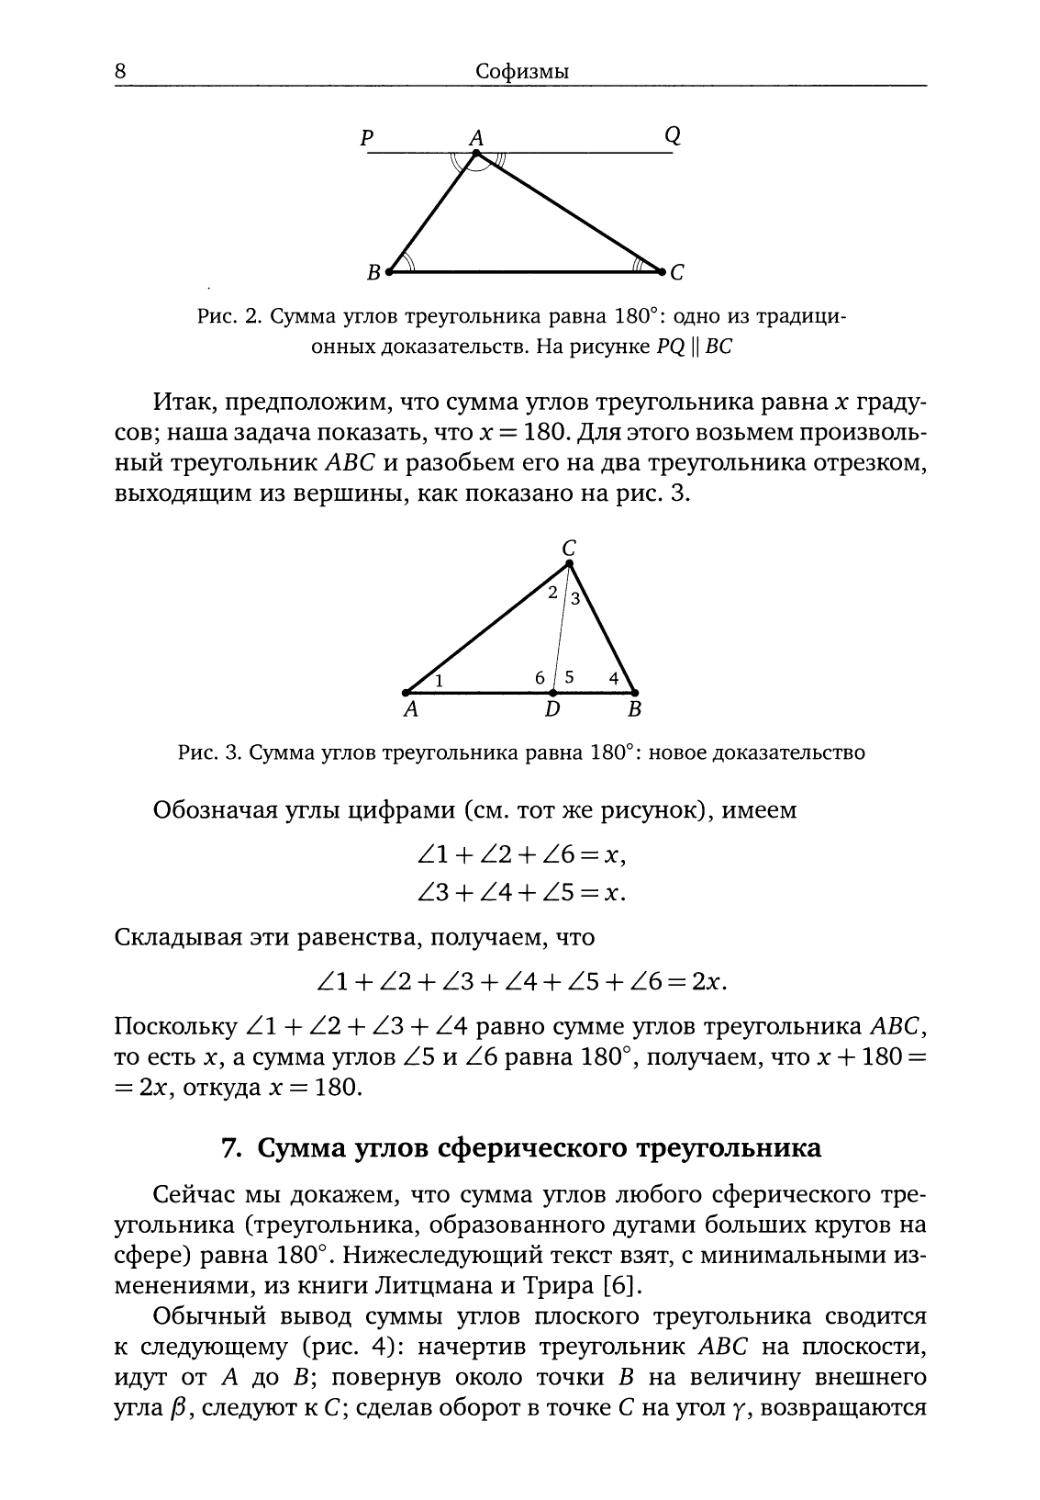 7. Сумма углов сферического треугольника